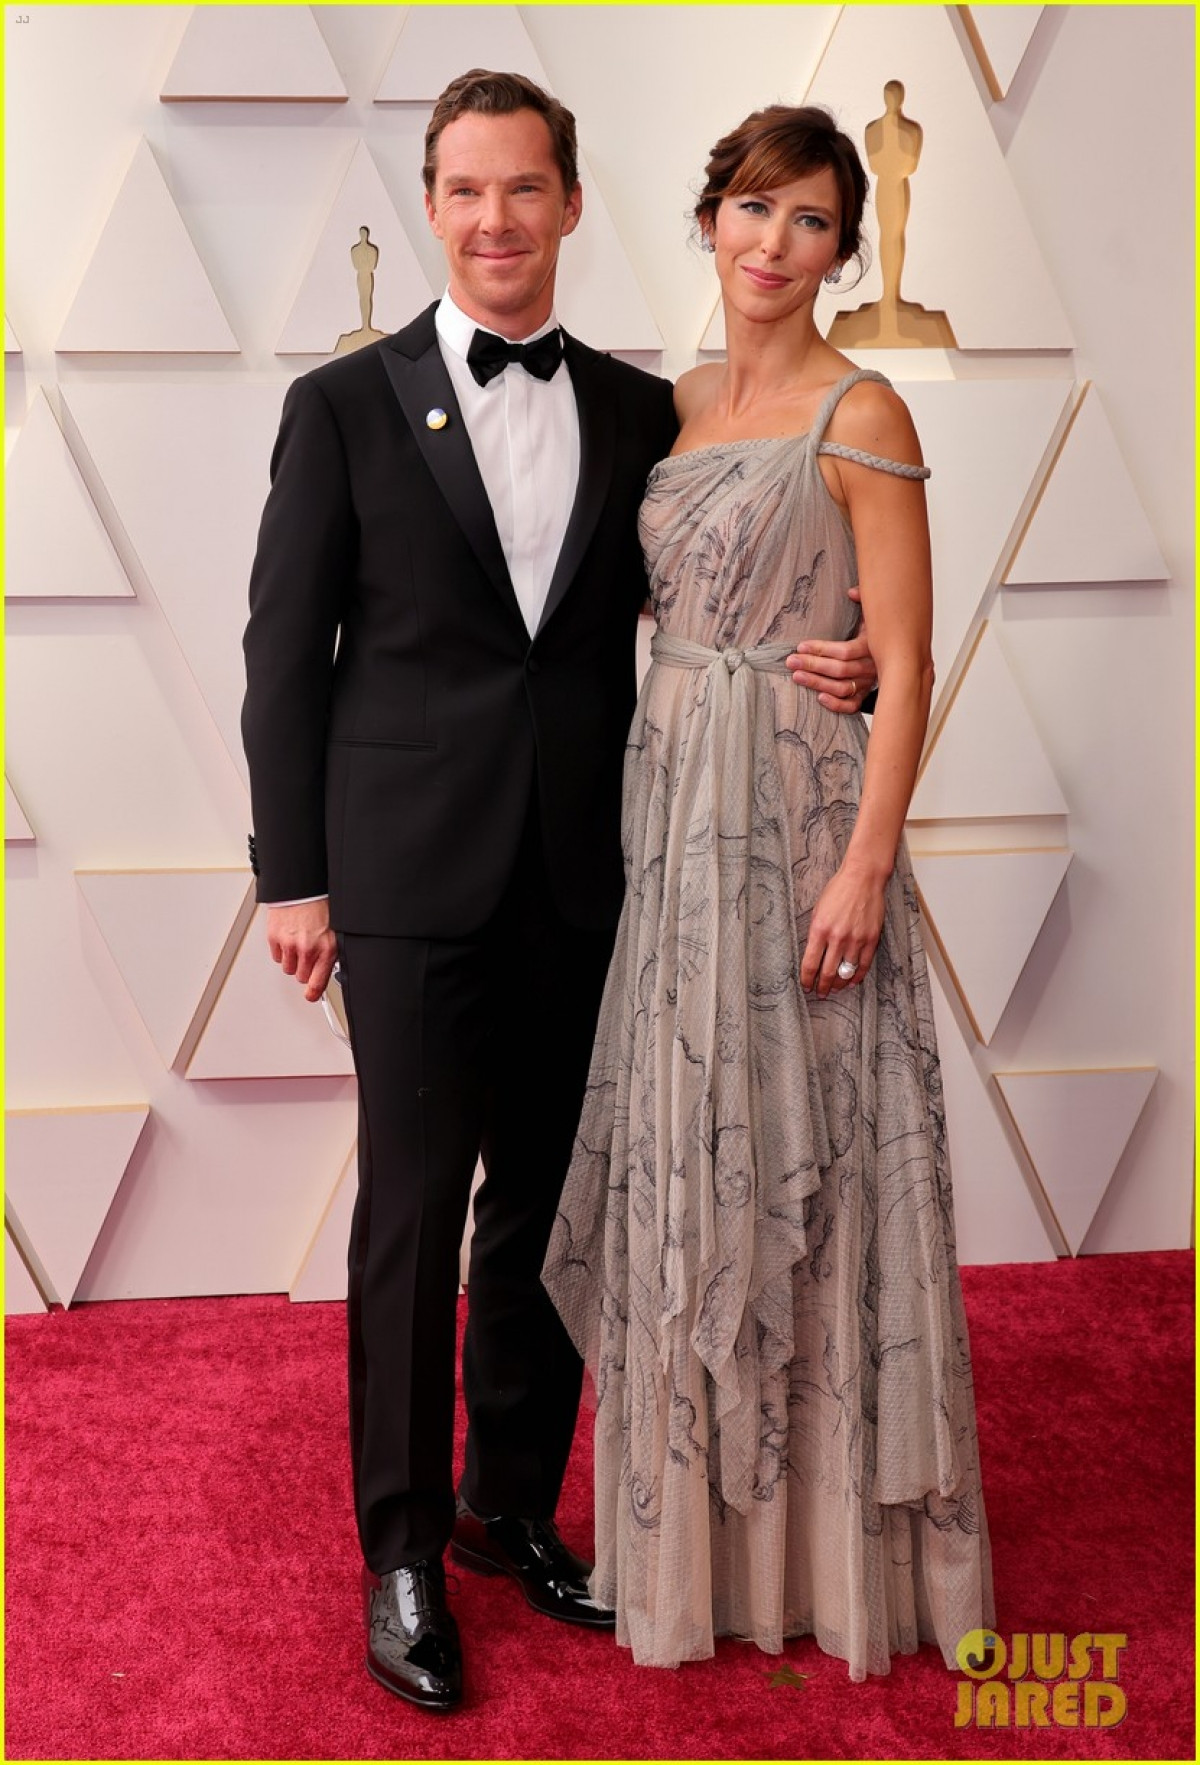 Benedict Cumberbatch xuất hiện trên thảm đỏ cùng với vợ Sophie Hunter. Benedict là một ứng cử viên tối nay ở hạng mục Nam diễn viên chính xuất sắc nhất cho vai diễn Phil Burbank trong 